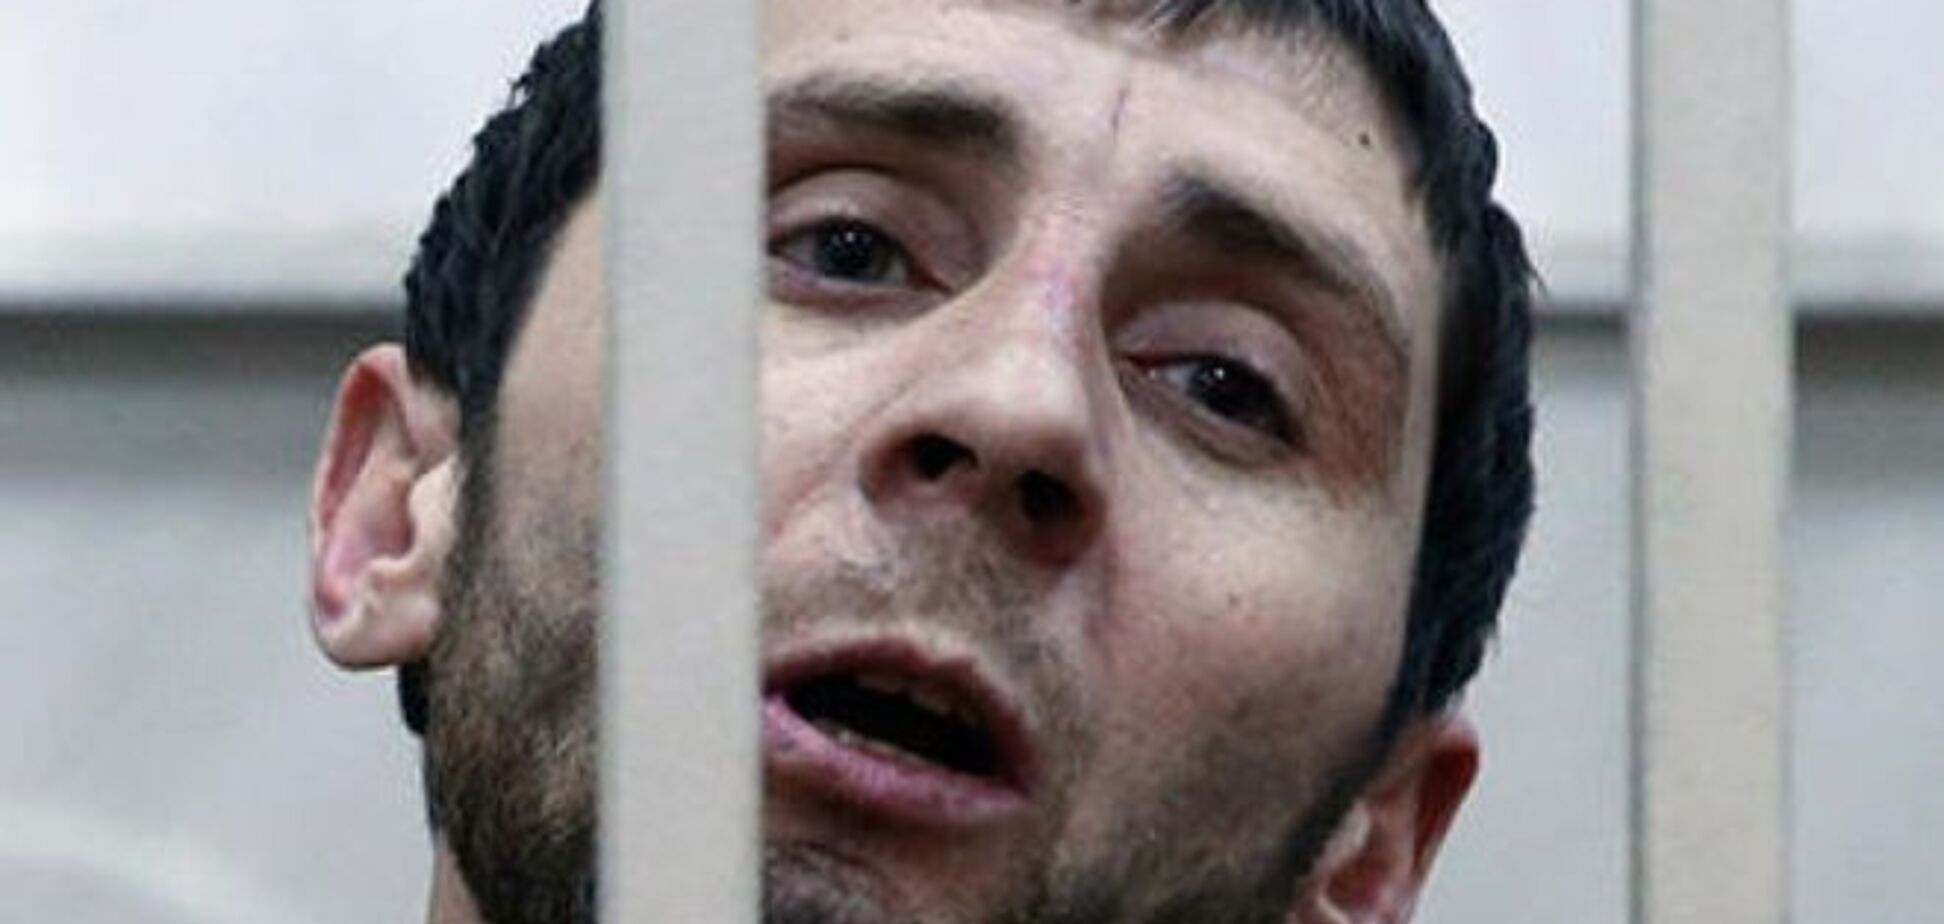 СМИ опубликовали восстановленные до минуты подробности убийства Немцова